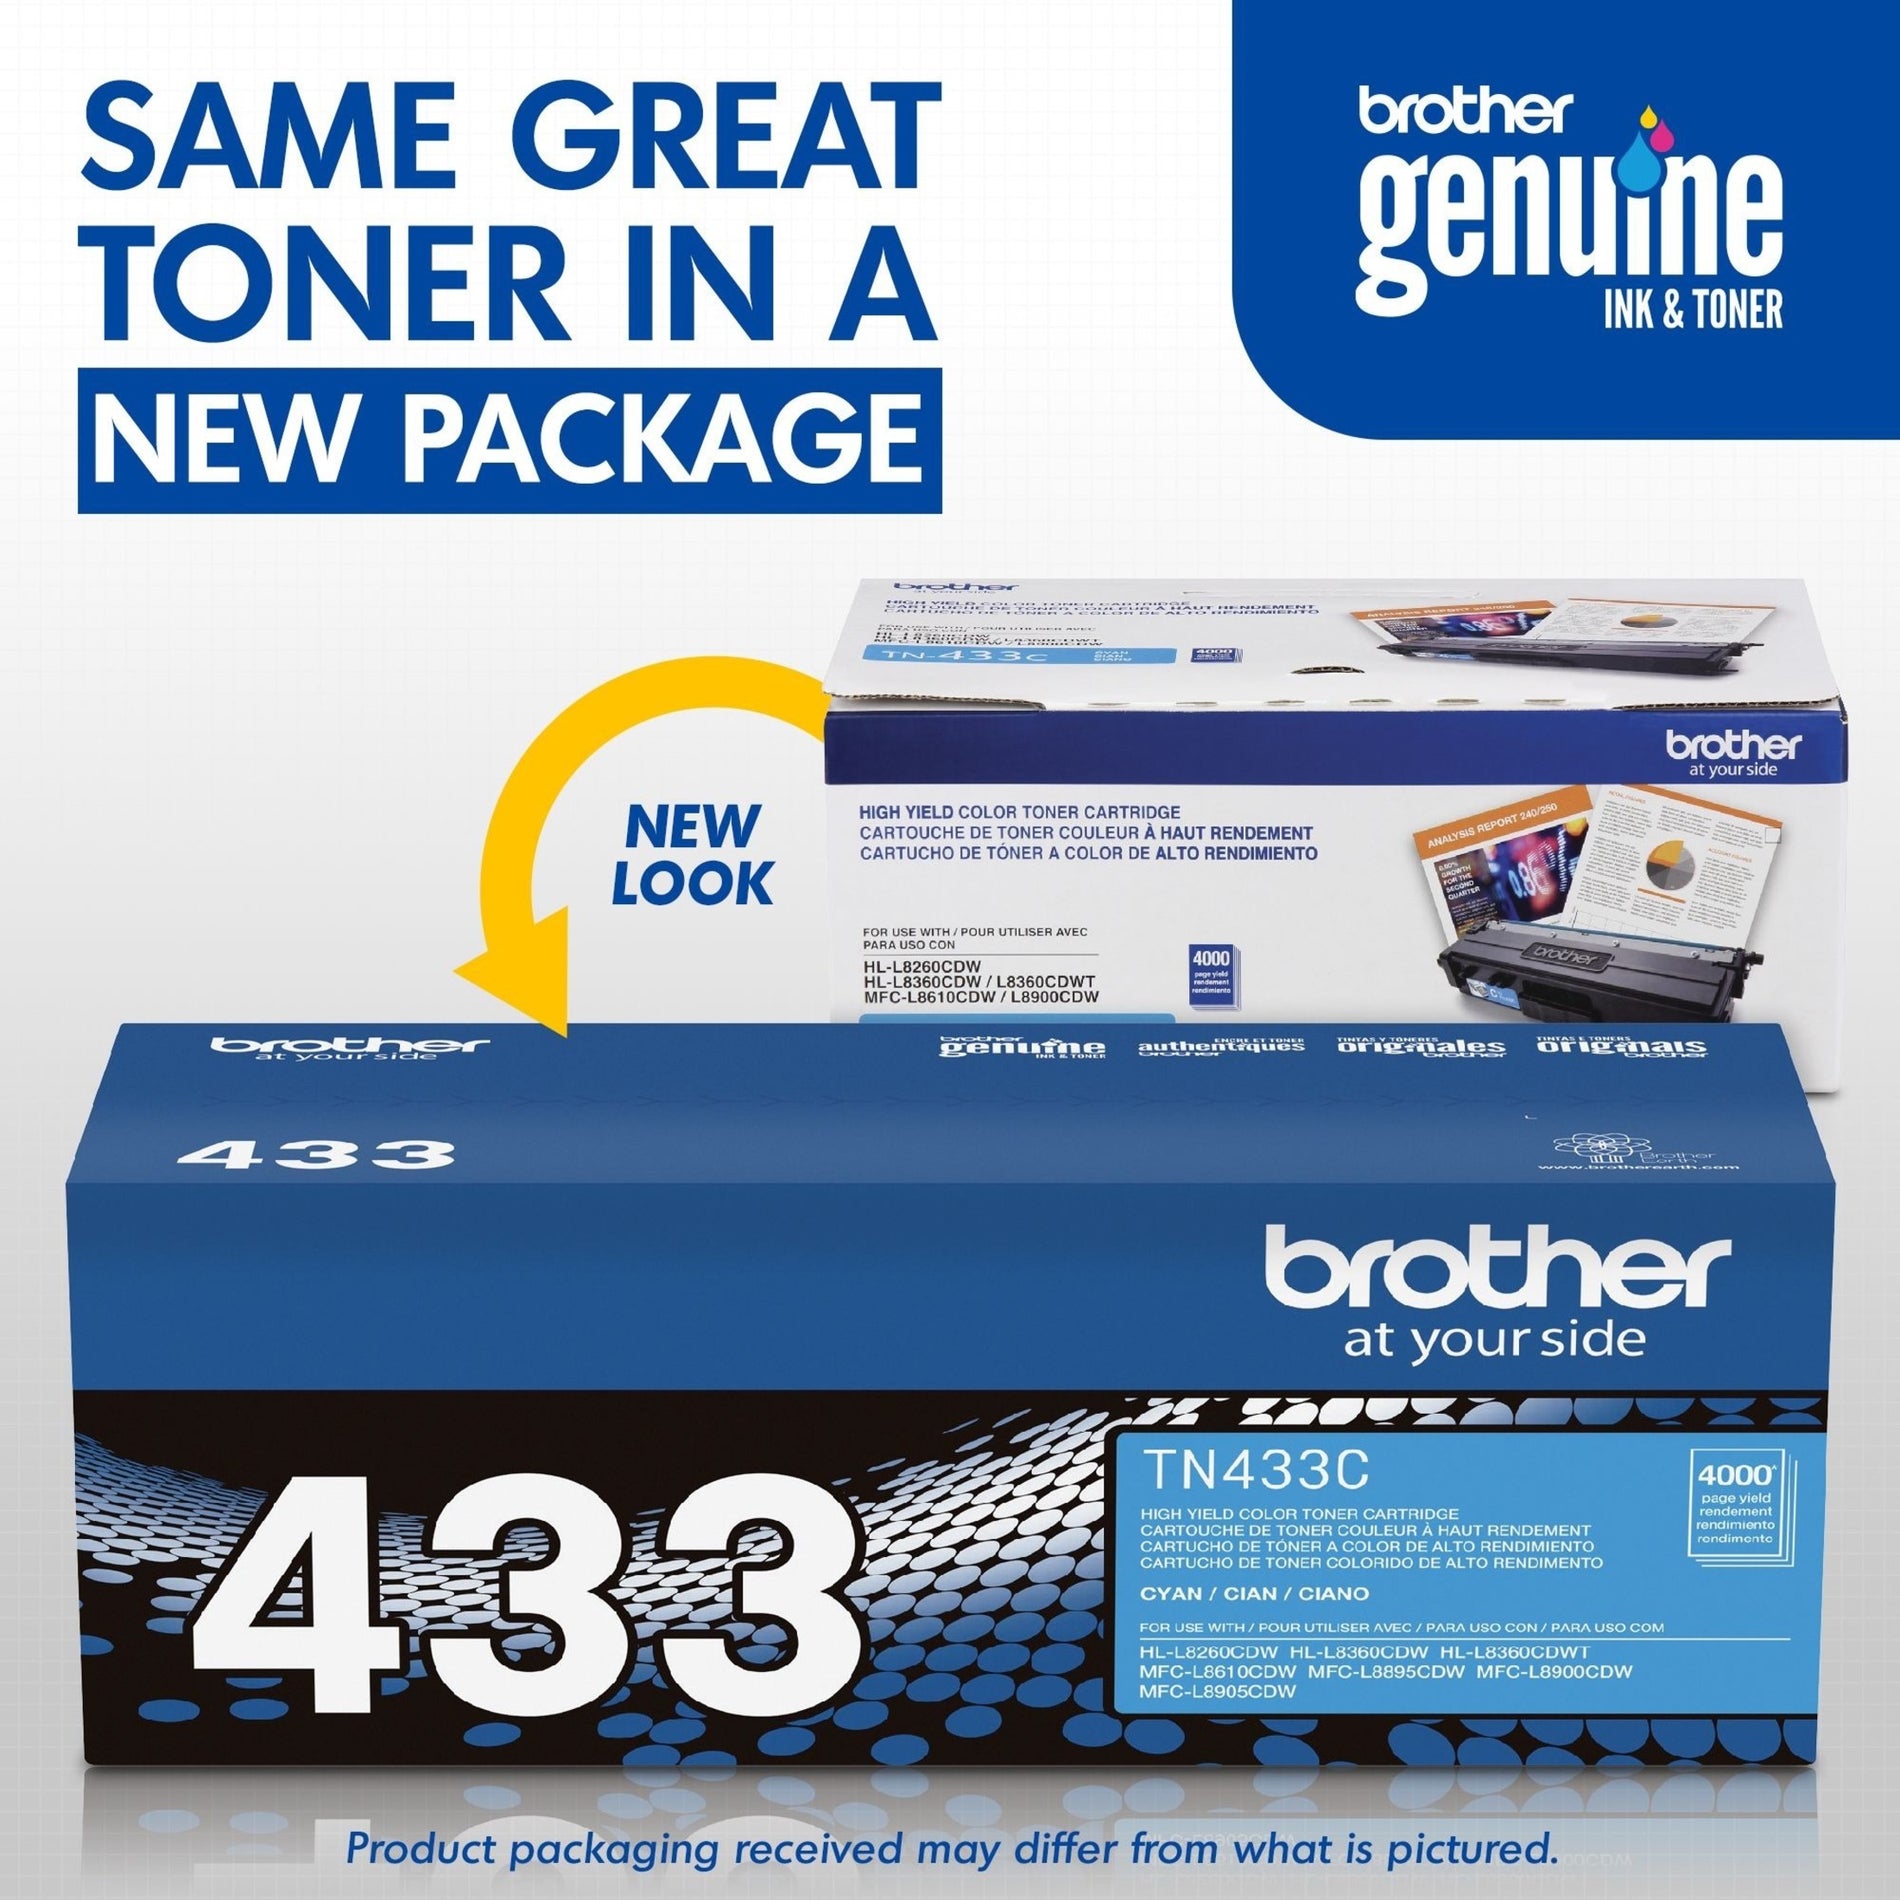 Brother TN433C 墨盒 4000 页高产量 青色  品牌名称: 兄弟 (Brother)